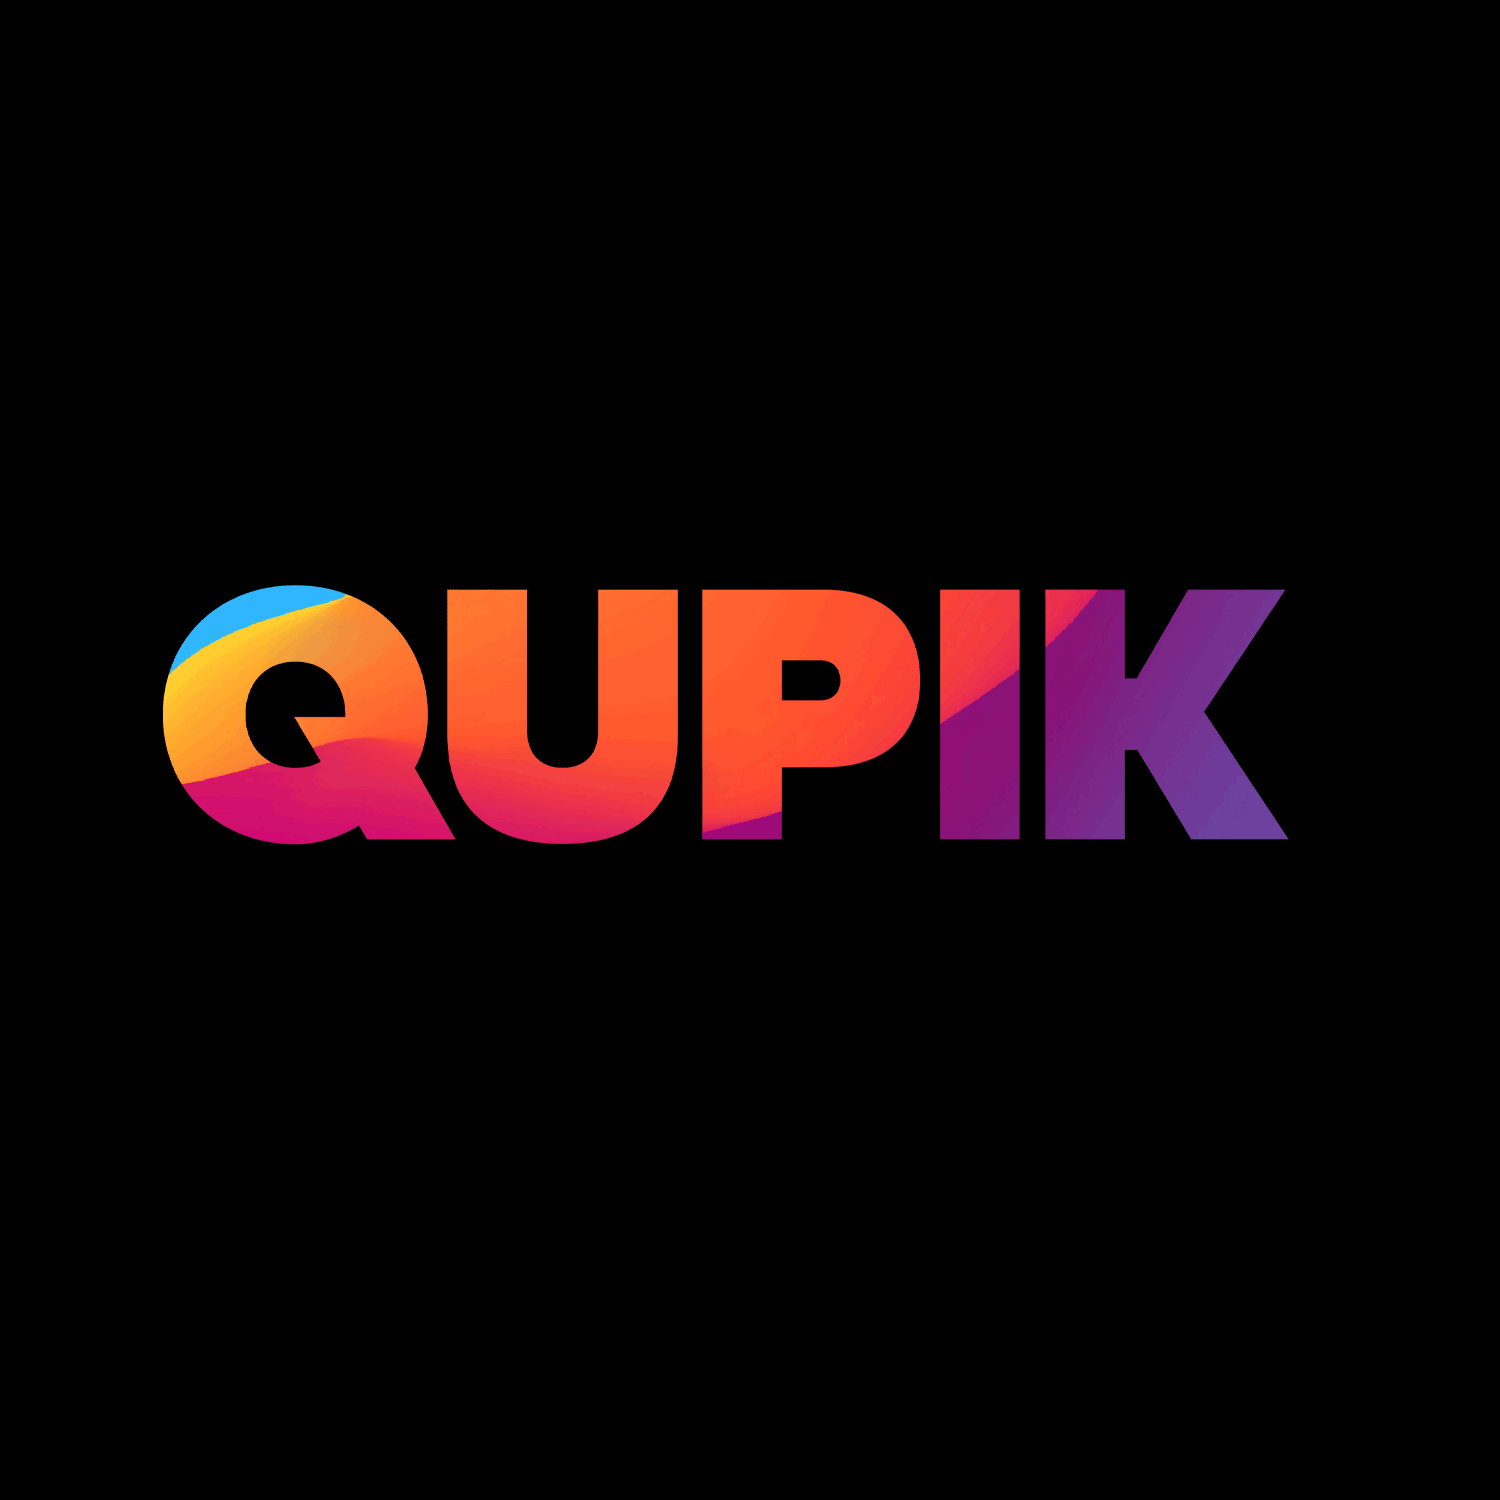 (c) Qupik.com